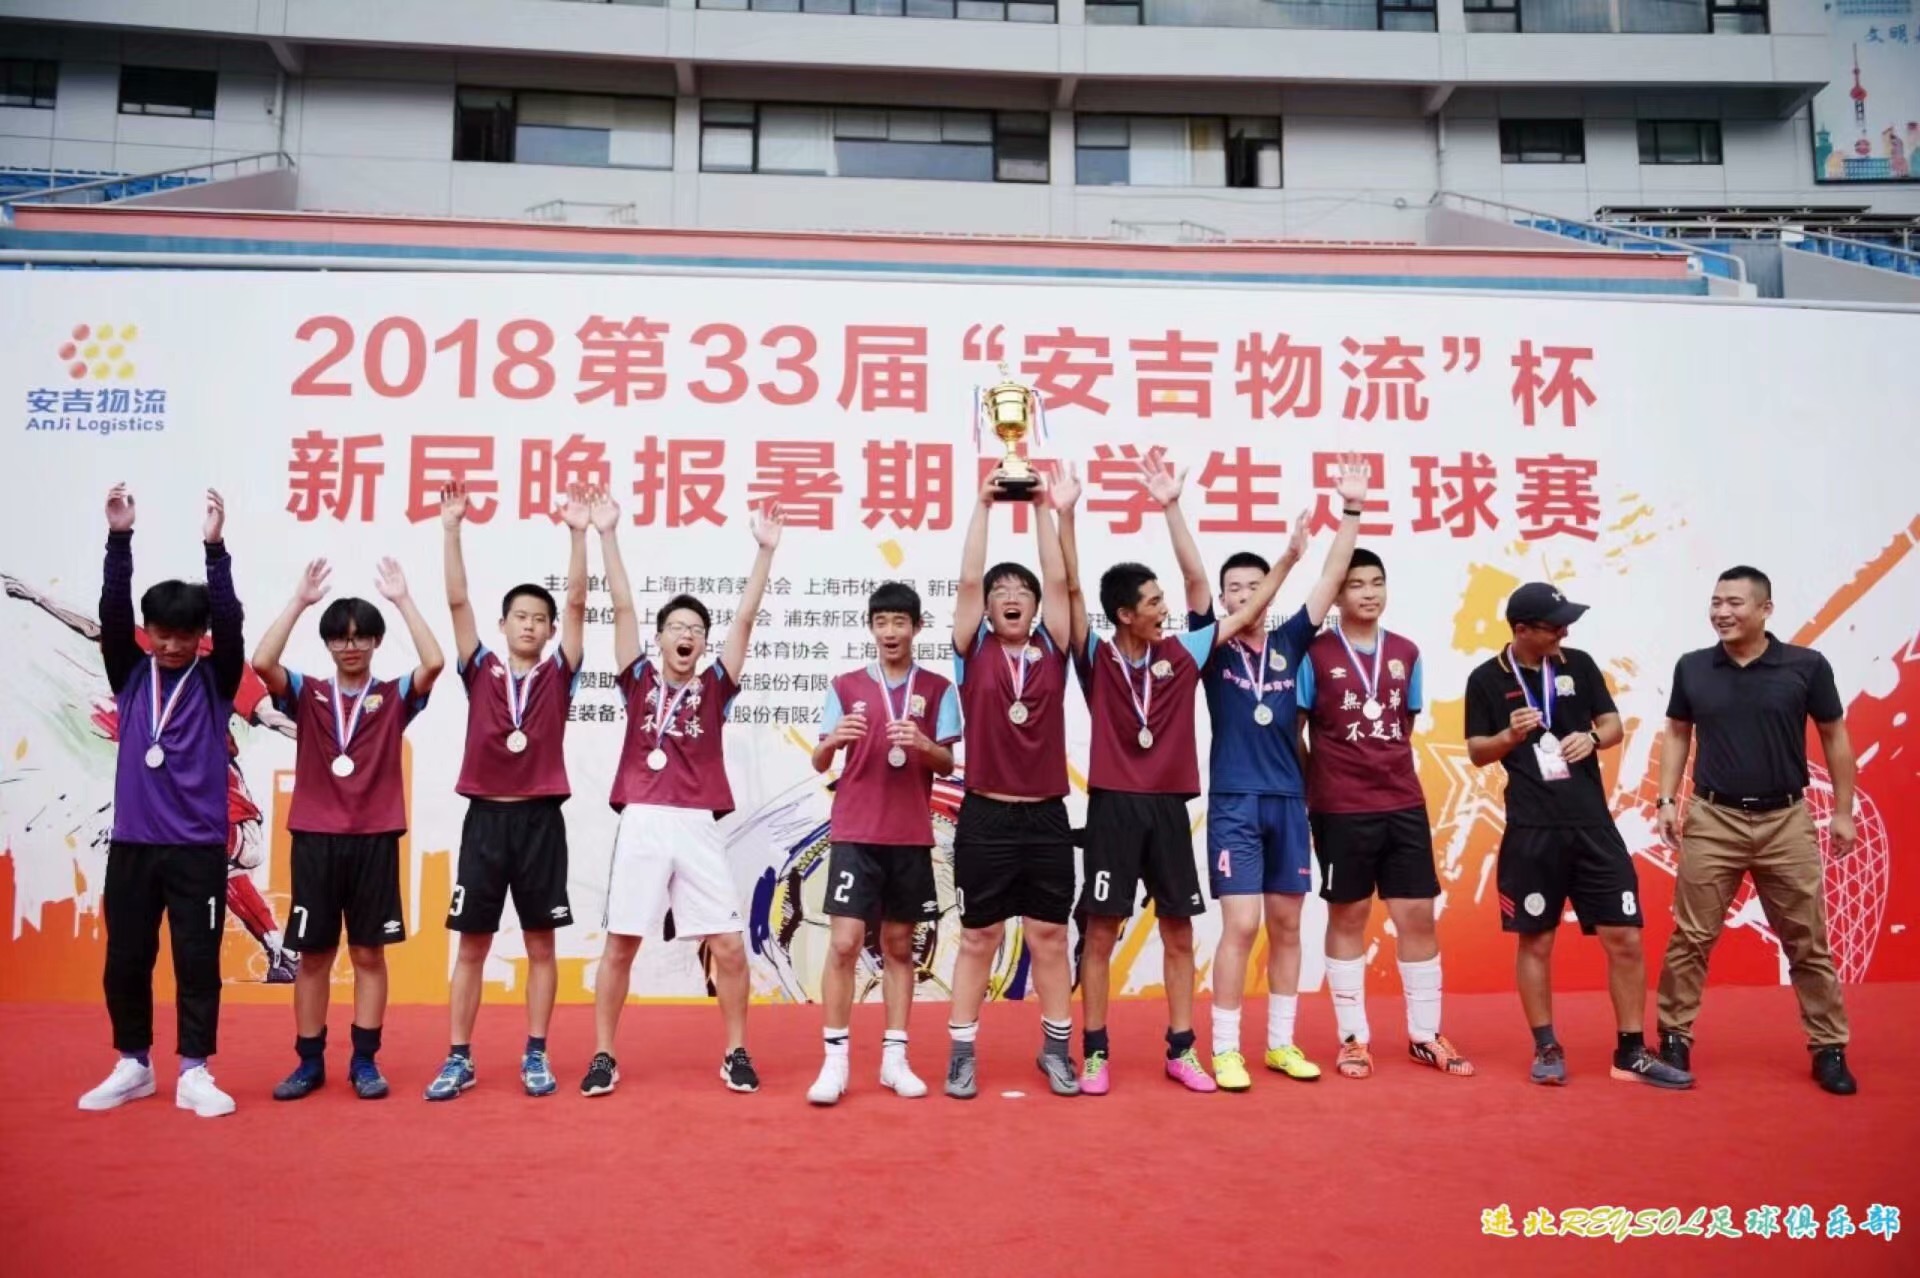 第33屆“安吉物流”杯新民晚報暑期中學生足球賽國中組亞軍